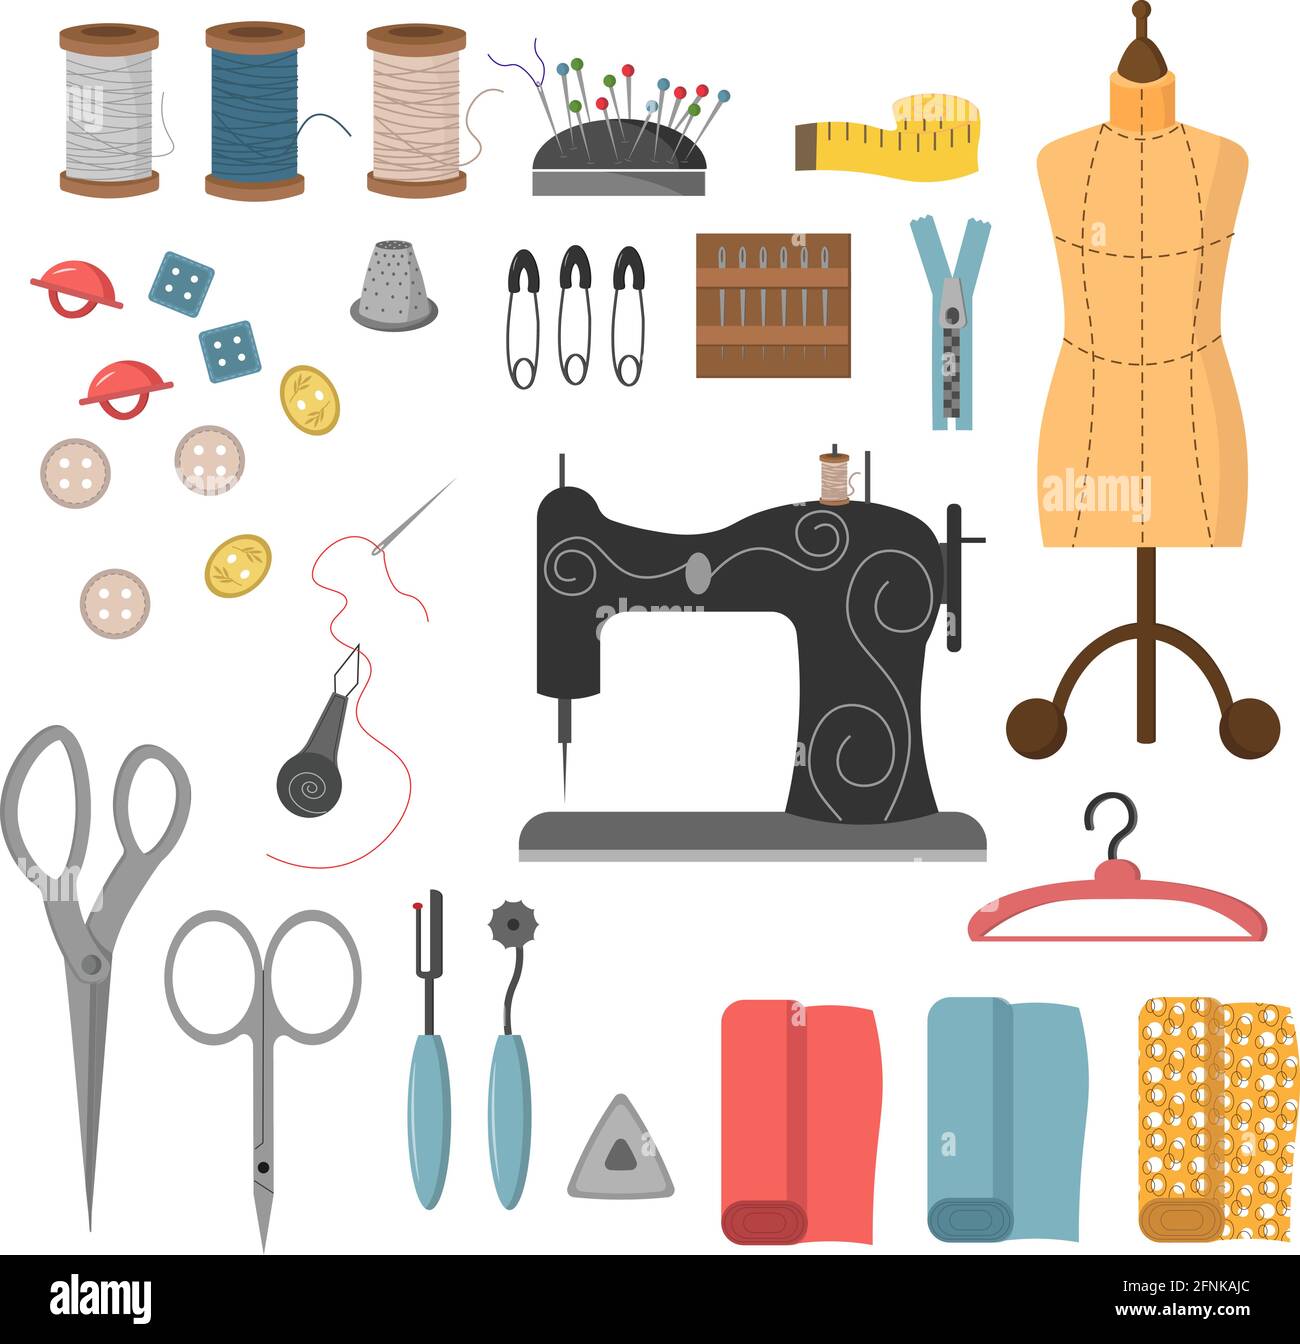 Sewing tools Banque d'images détourées - Alamy